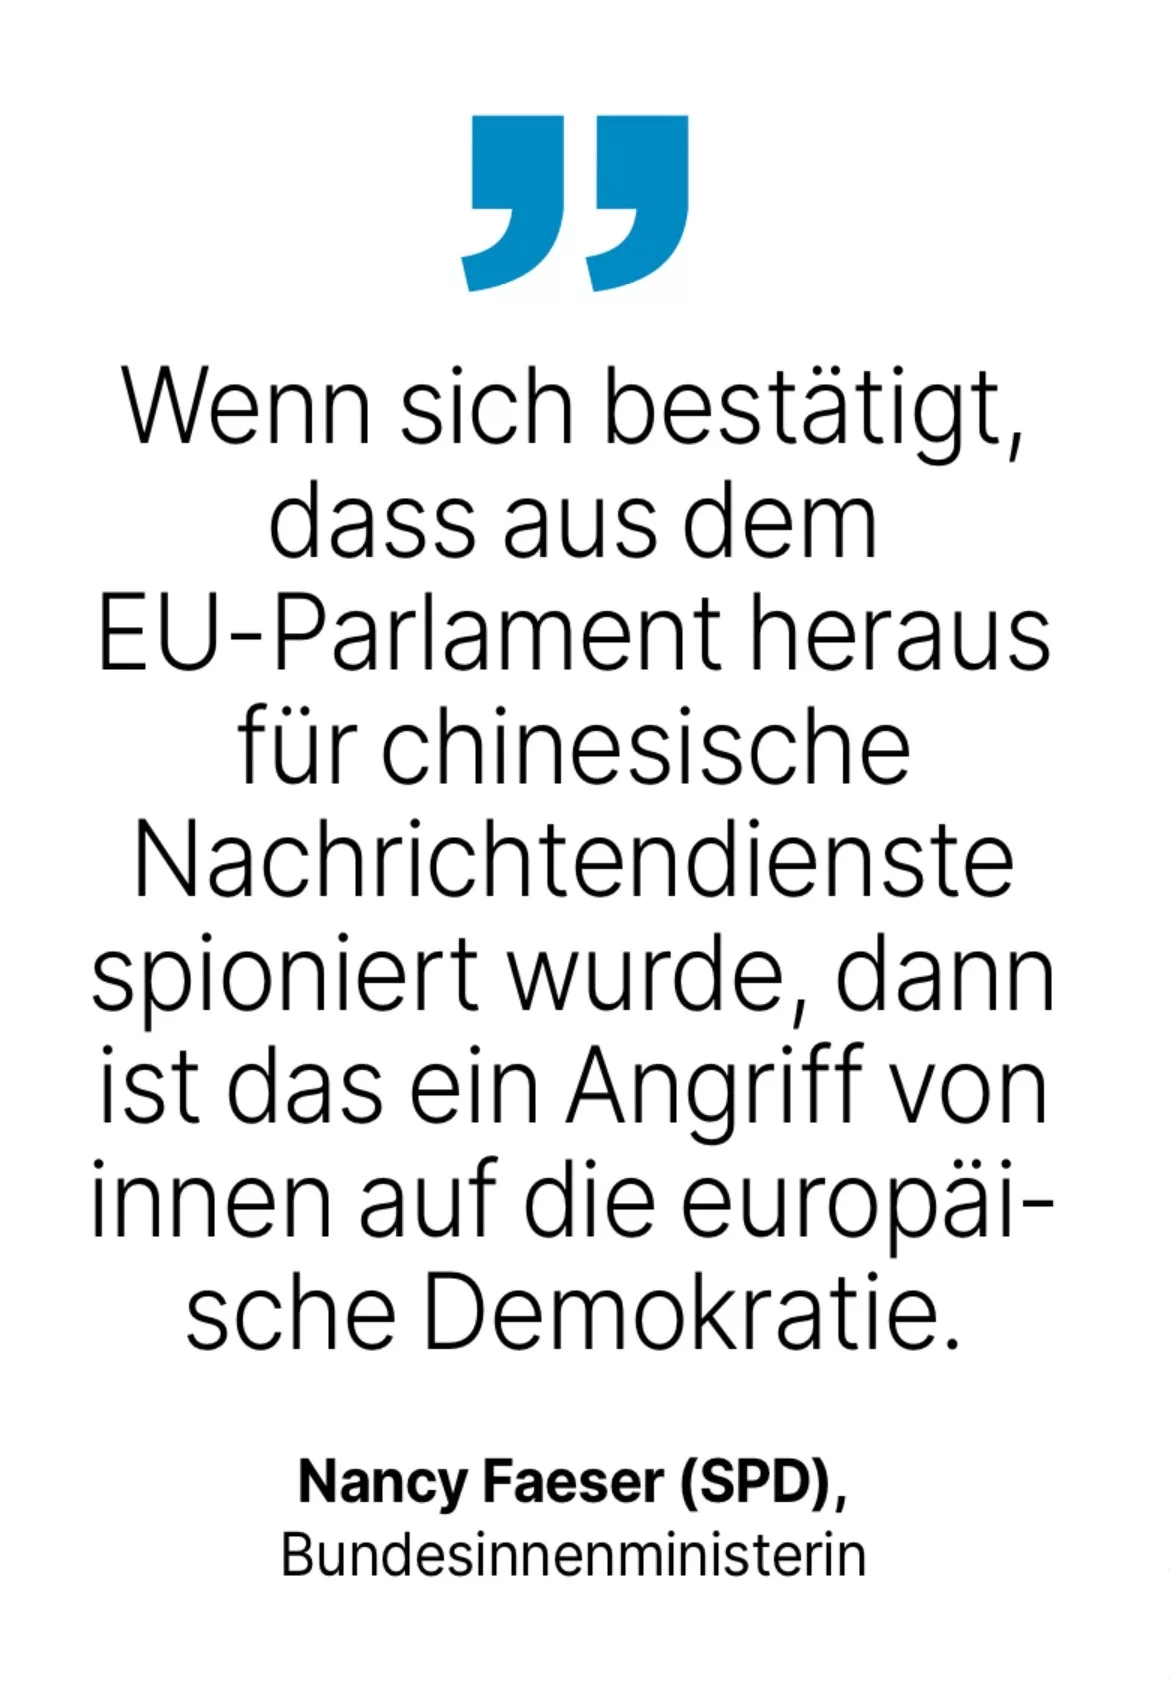 Nancy Faeser (SPD), Bundesinnenministerin: Wenn sich bestätigt, dass aus dem EU-Parlament heraus für chinesische Nachrichtendienste spioniert wurde, dann ist das ein Angriff von innen auf die europäische Demokratie.